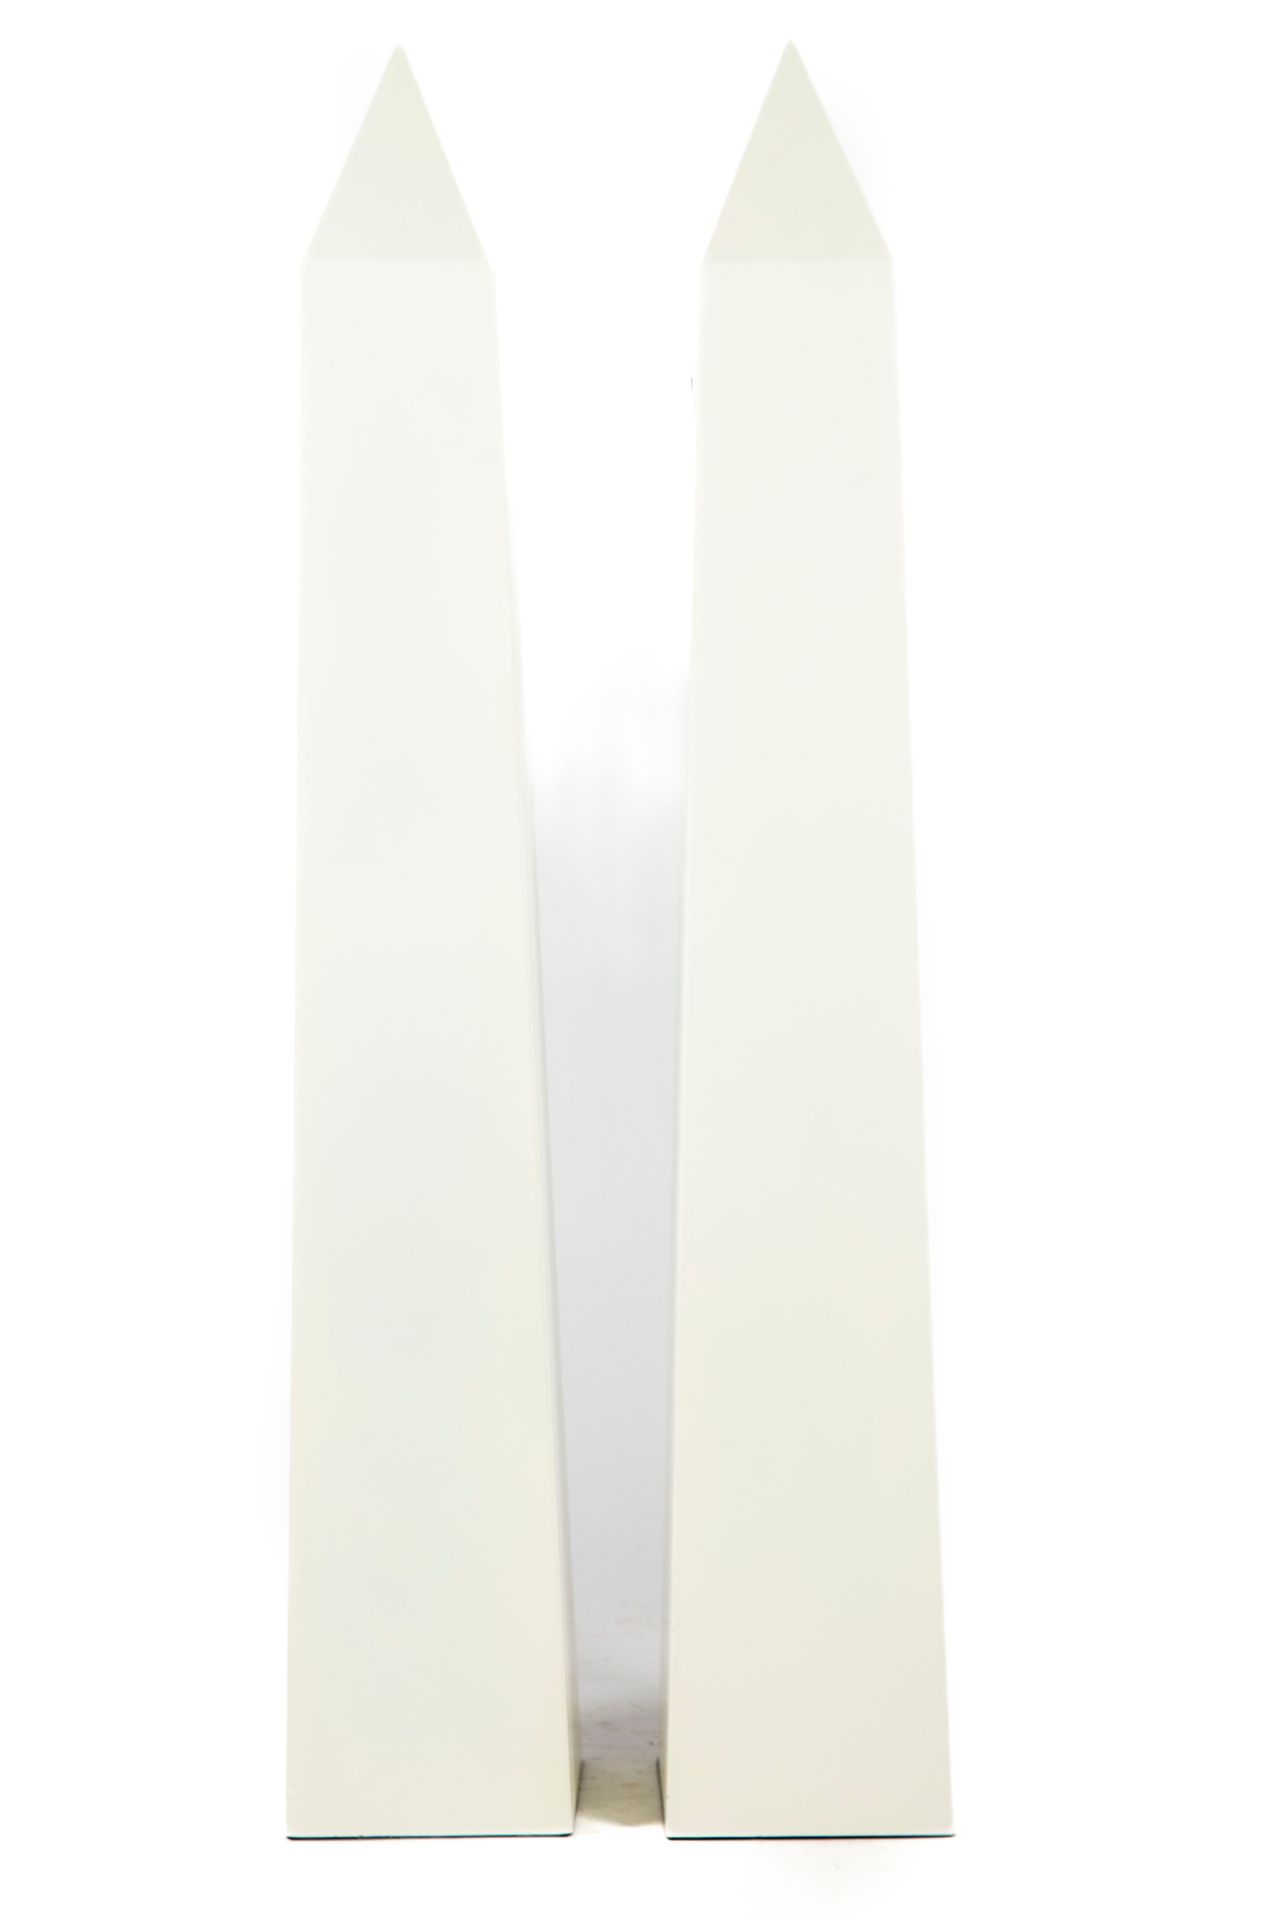 Null Large pair of obelisks in white resin
H. 95 cm